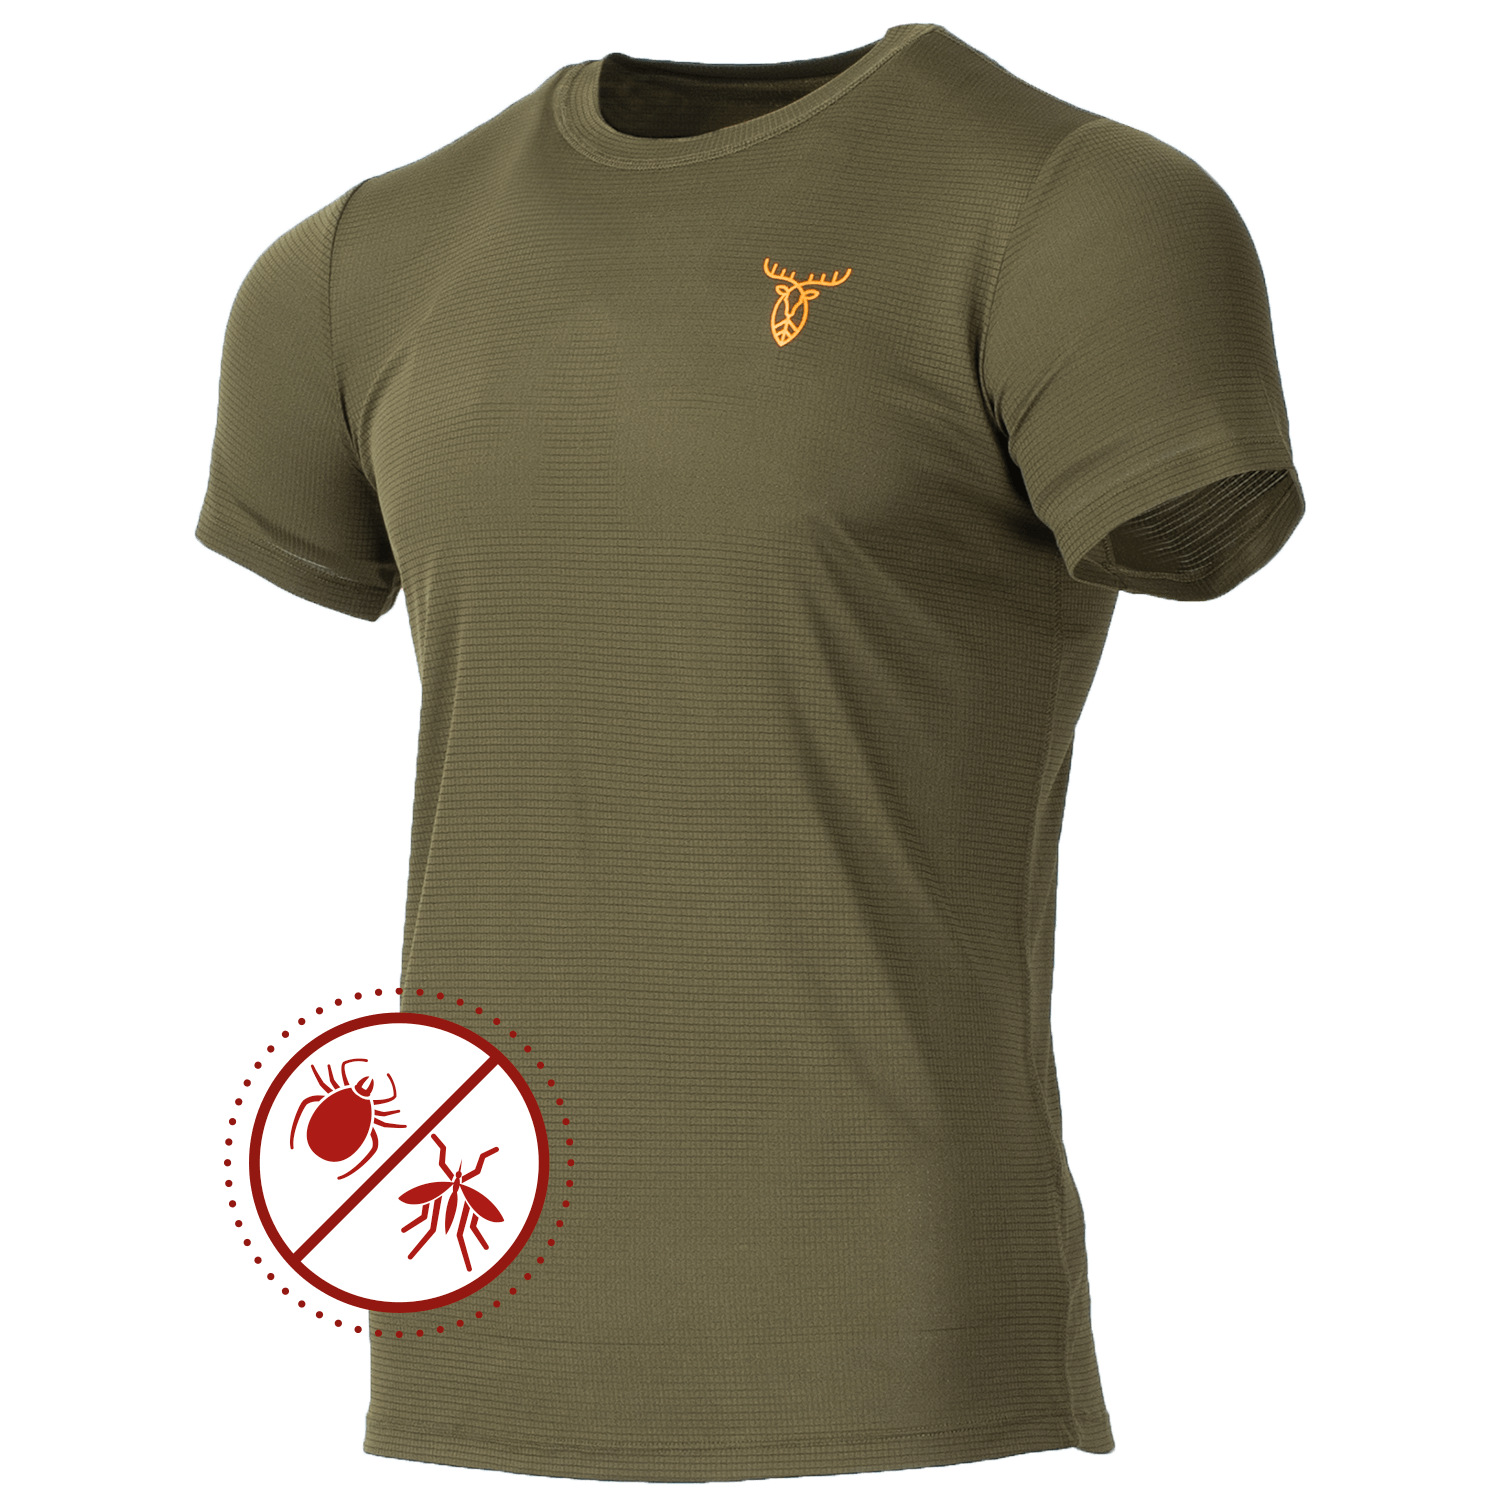 Pirscher Gear Ultralight Tanatex T-Shirt - Shirts